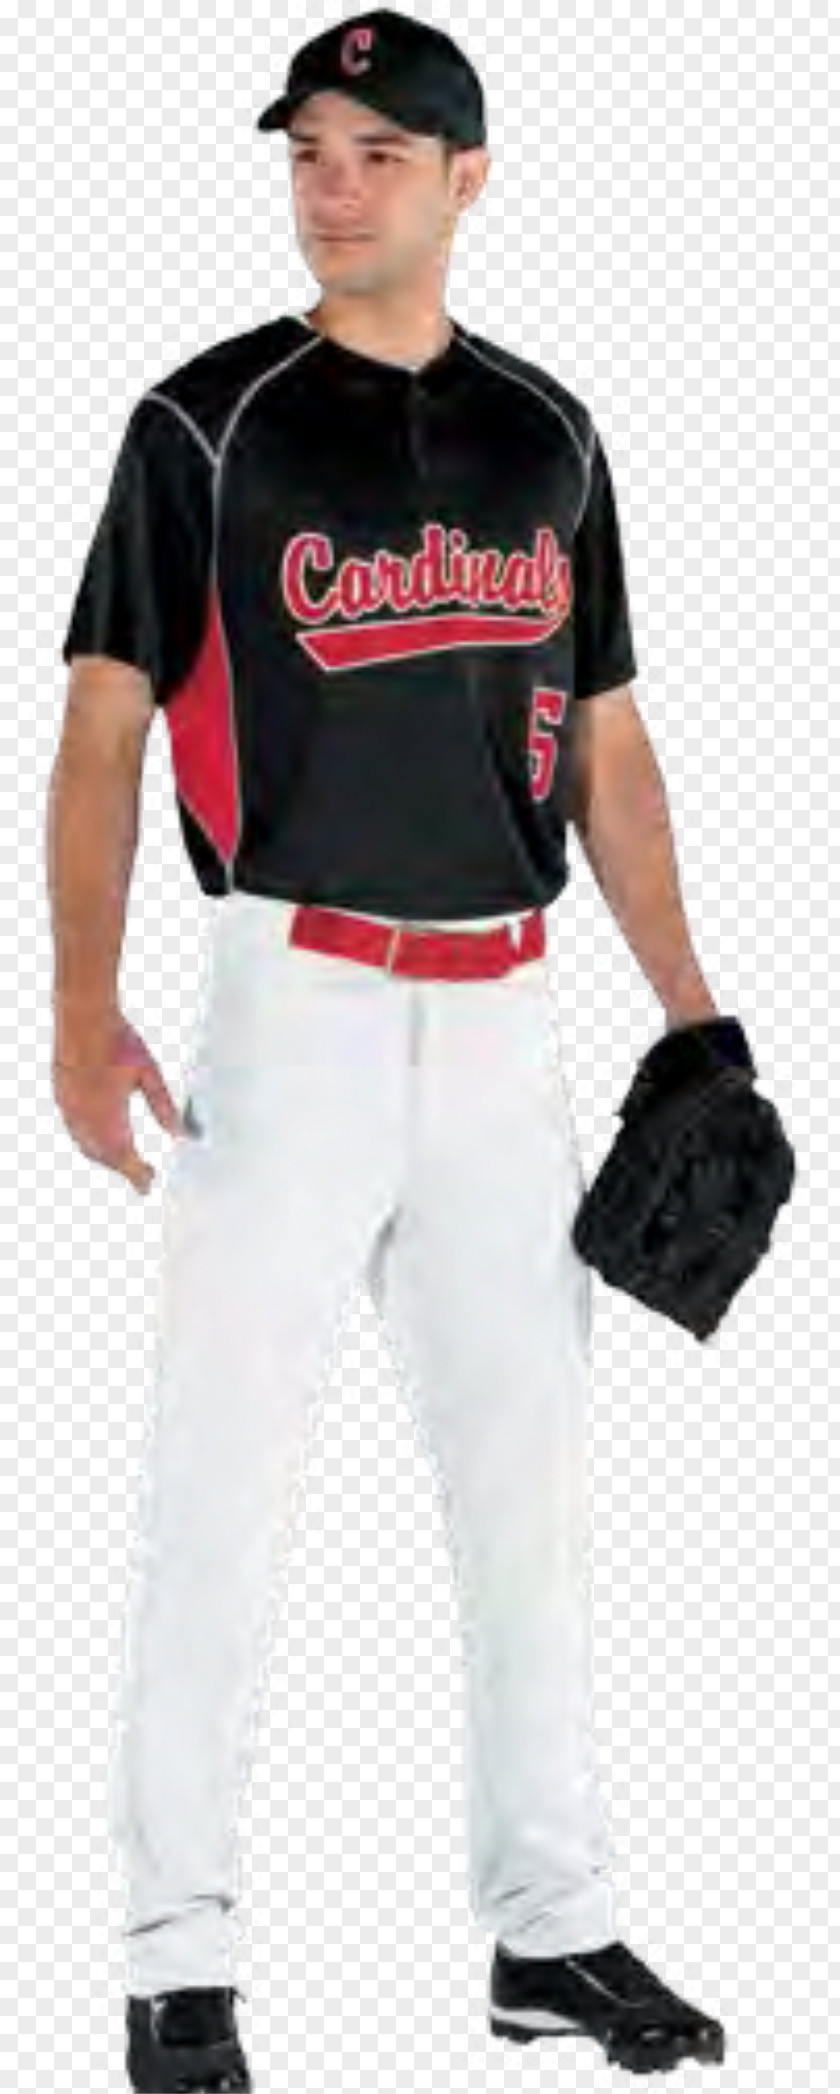 High School Cheer Uniforms Baseball Uniform Jersey & Softball PNG